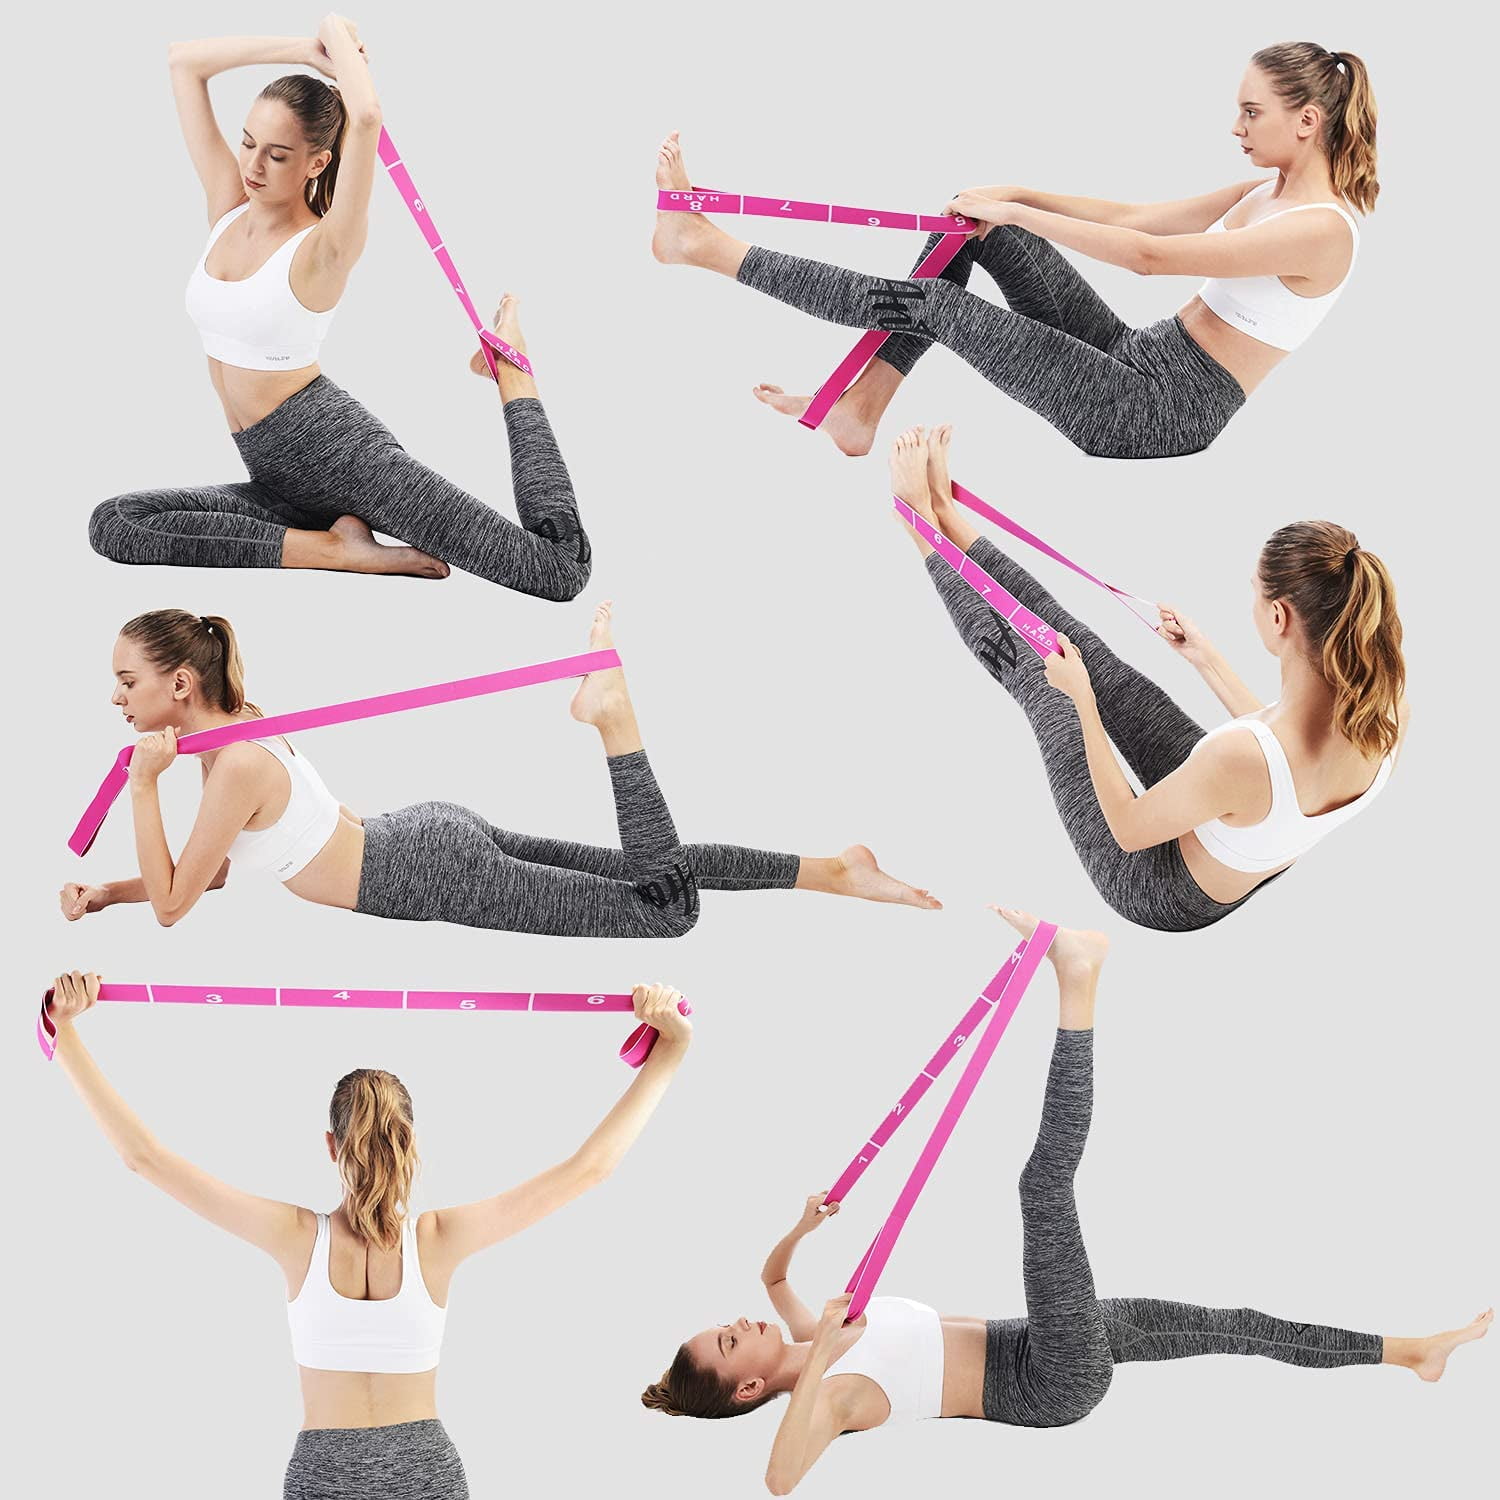 Flexibility Stretching Leg Stretcher Bund Strap For Ballet Cheer